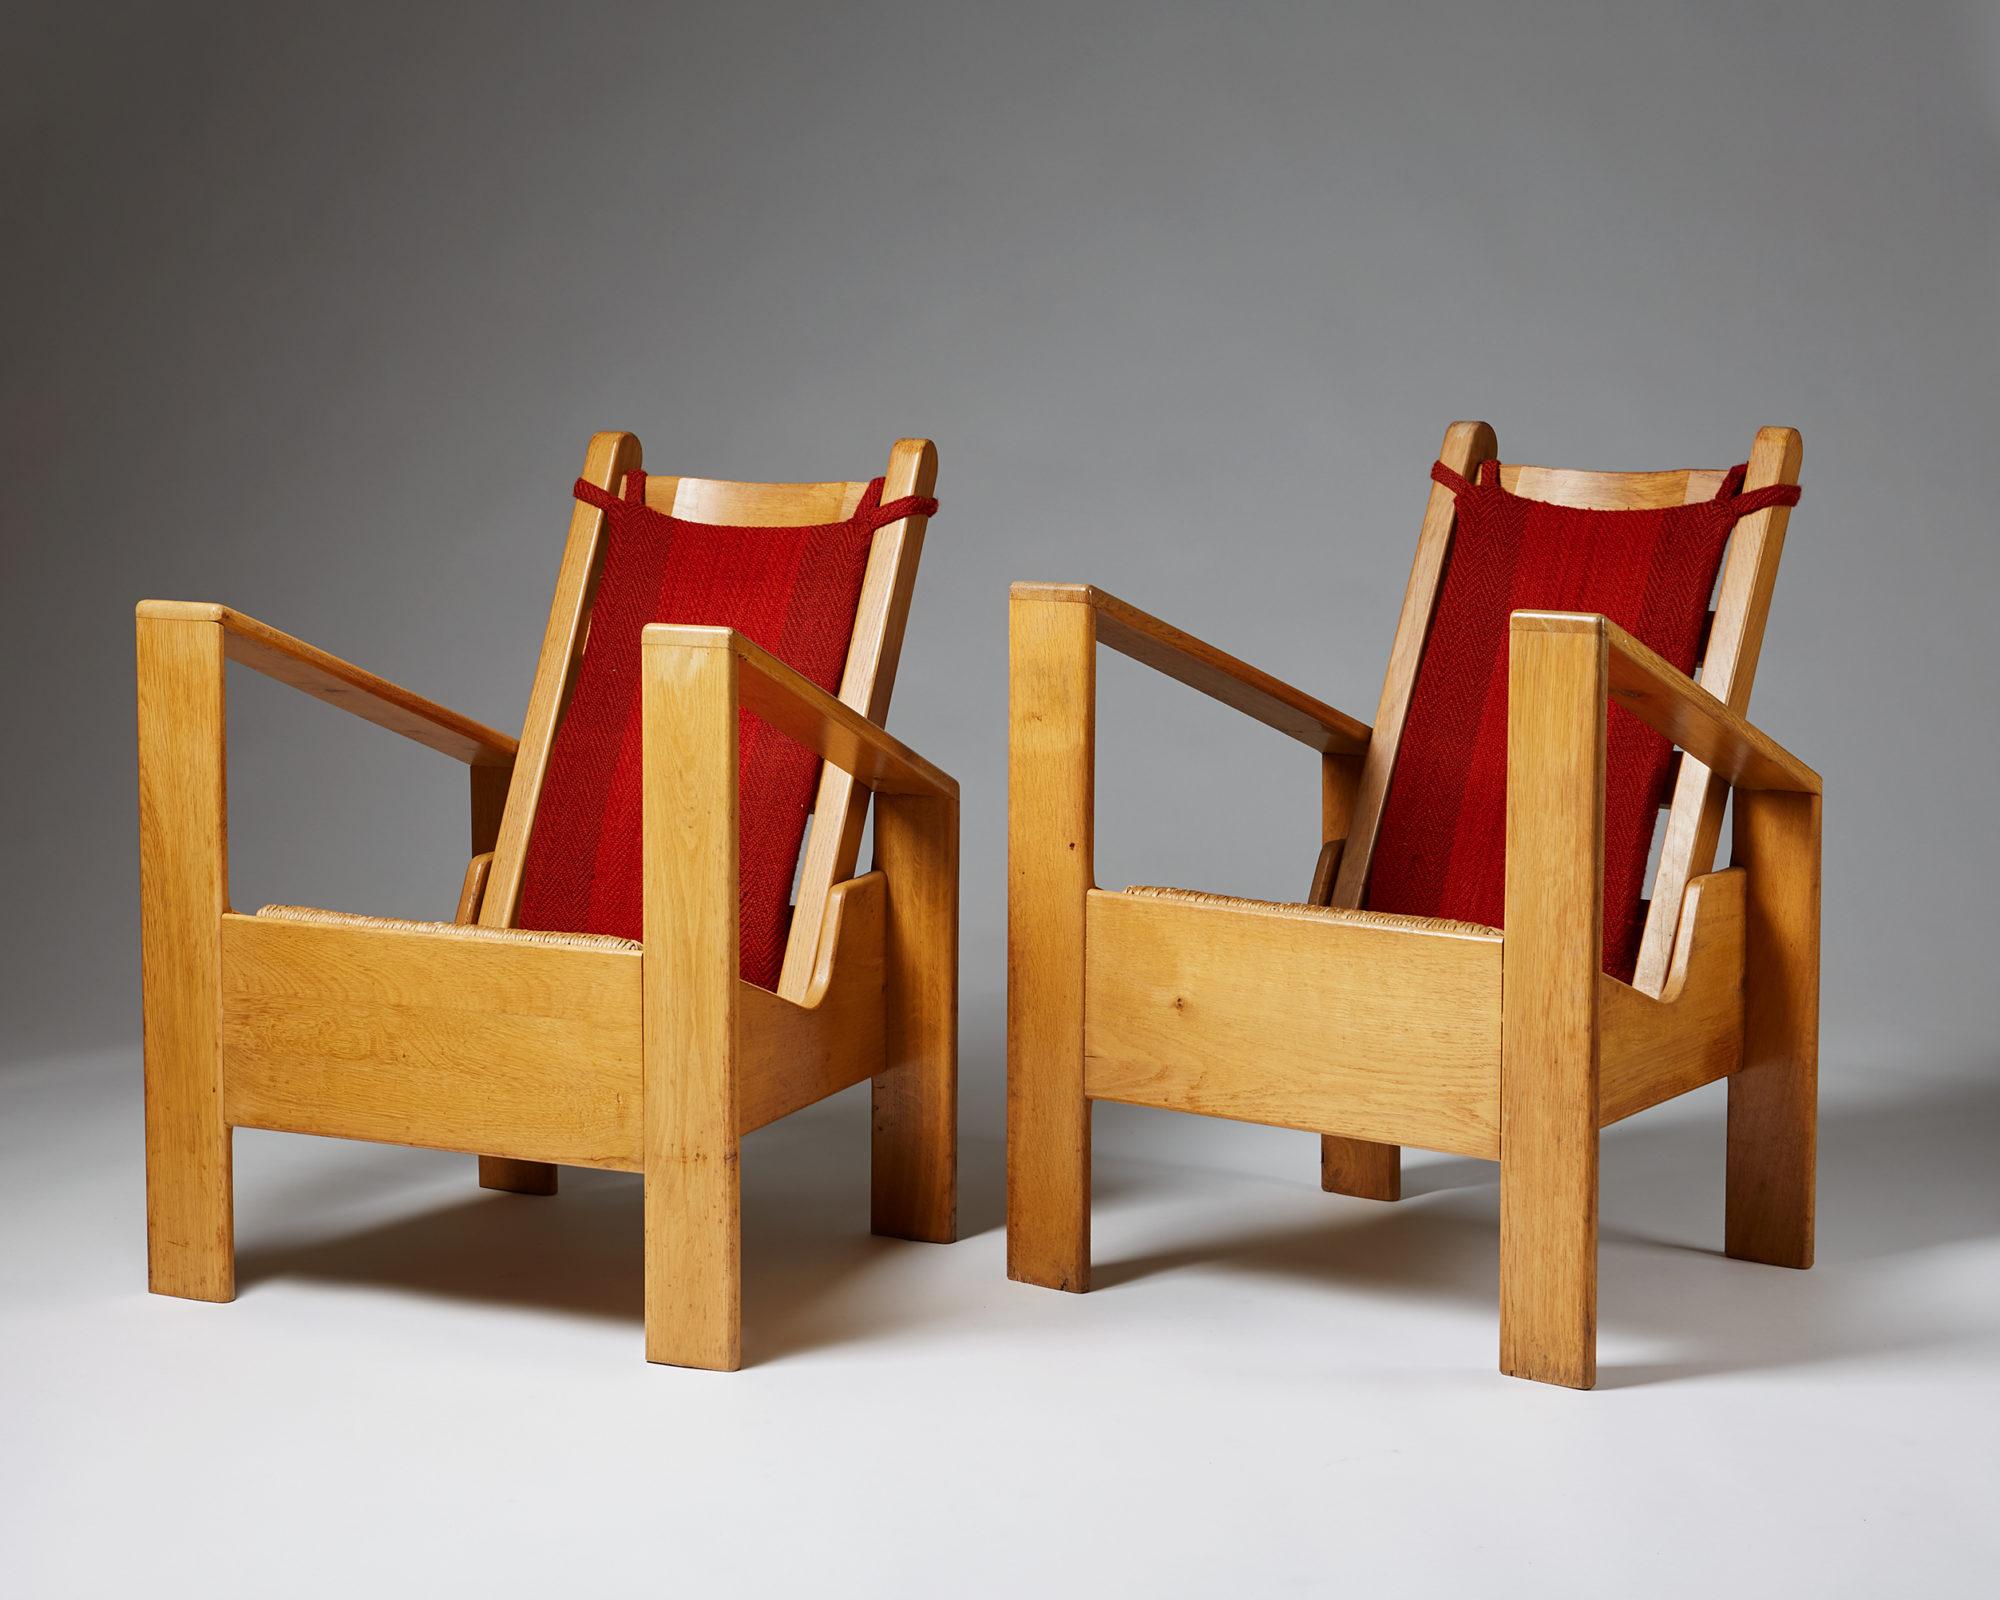 Ein Paar Sessel im Stil von Jean Royère,
Frankreich 1940er Jahre.

Eiche und Bast. 
Lose Rückenkissen, gepolstert mit roter Wolle.

Abmessungen:
H: 87,2 cm/ 34 1/4''
W: 67 cm/ 26 1/2''
T: 56 cm/ 22''
SH: 42 cm/ 16 1/2''

 